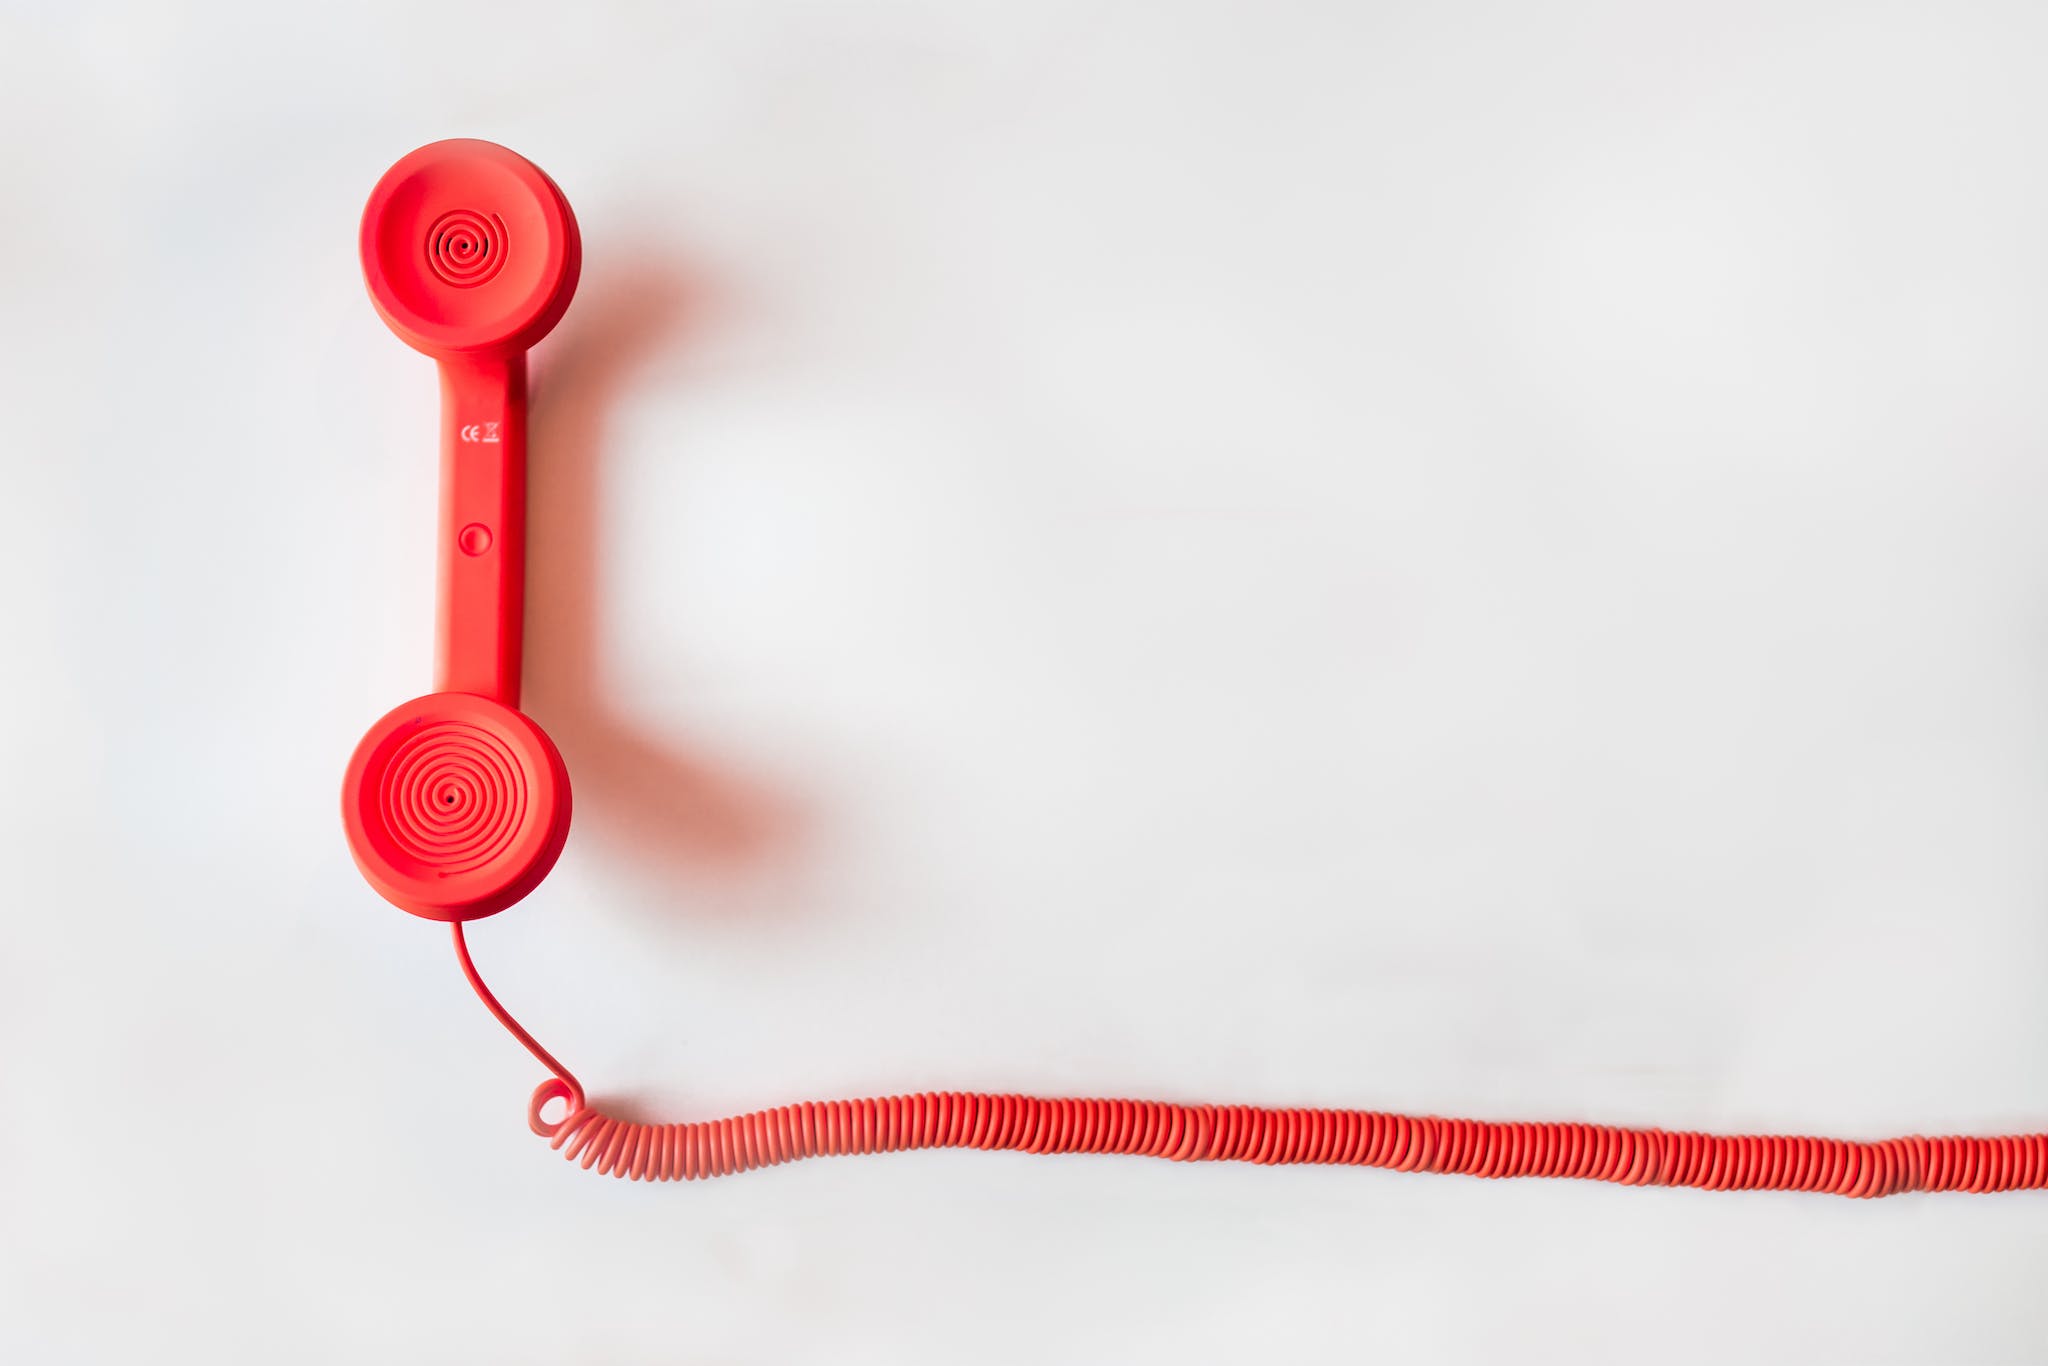 Telephone rouge à cordon sur une surface blanche